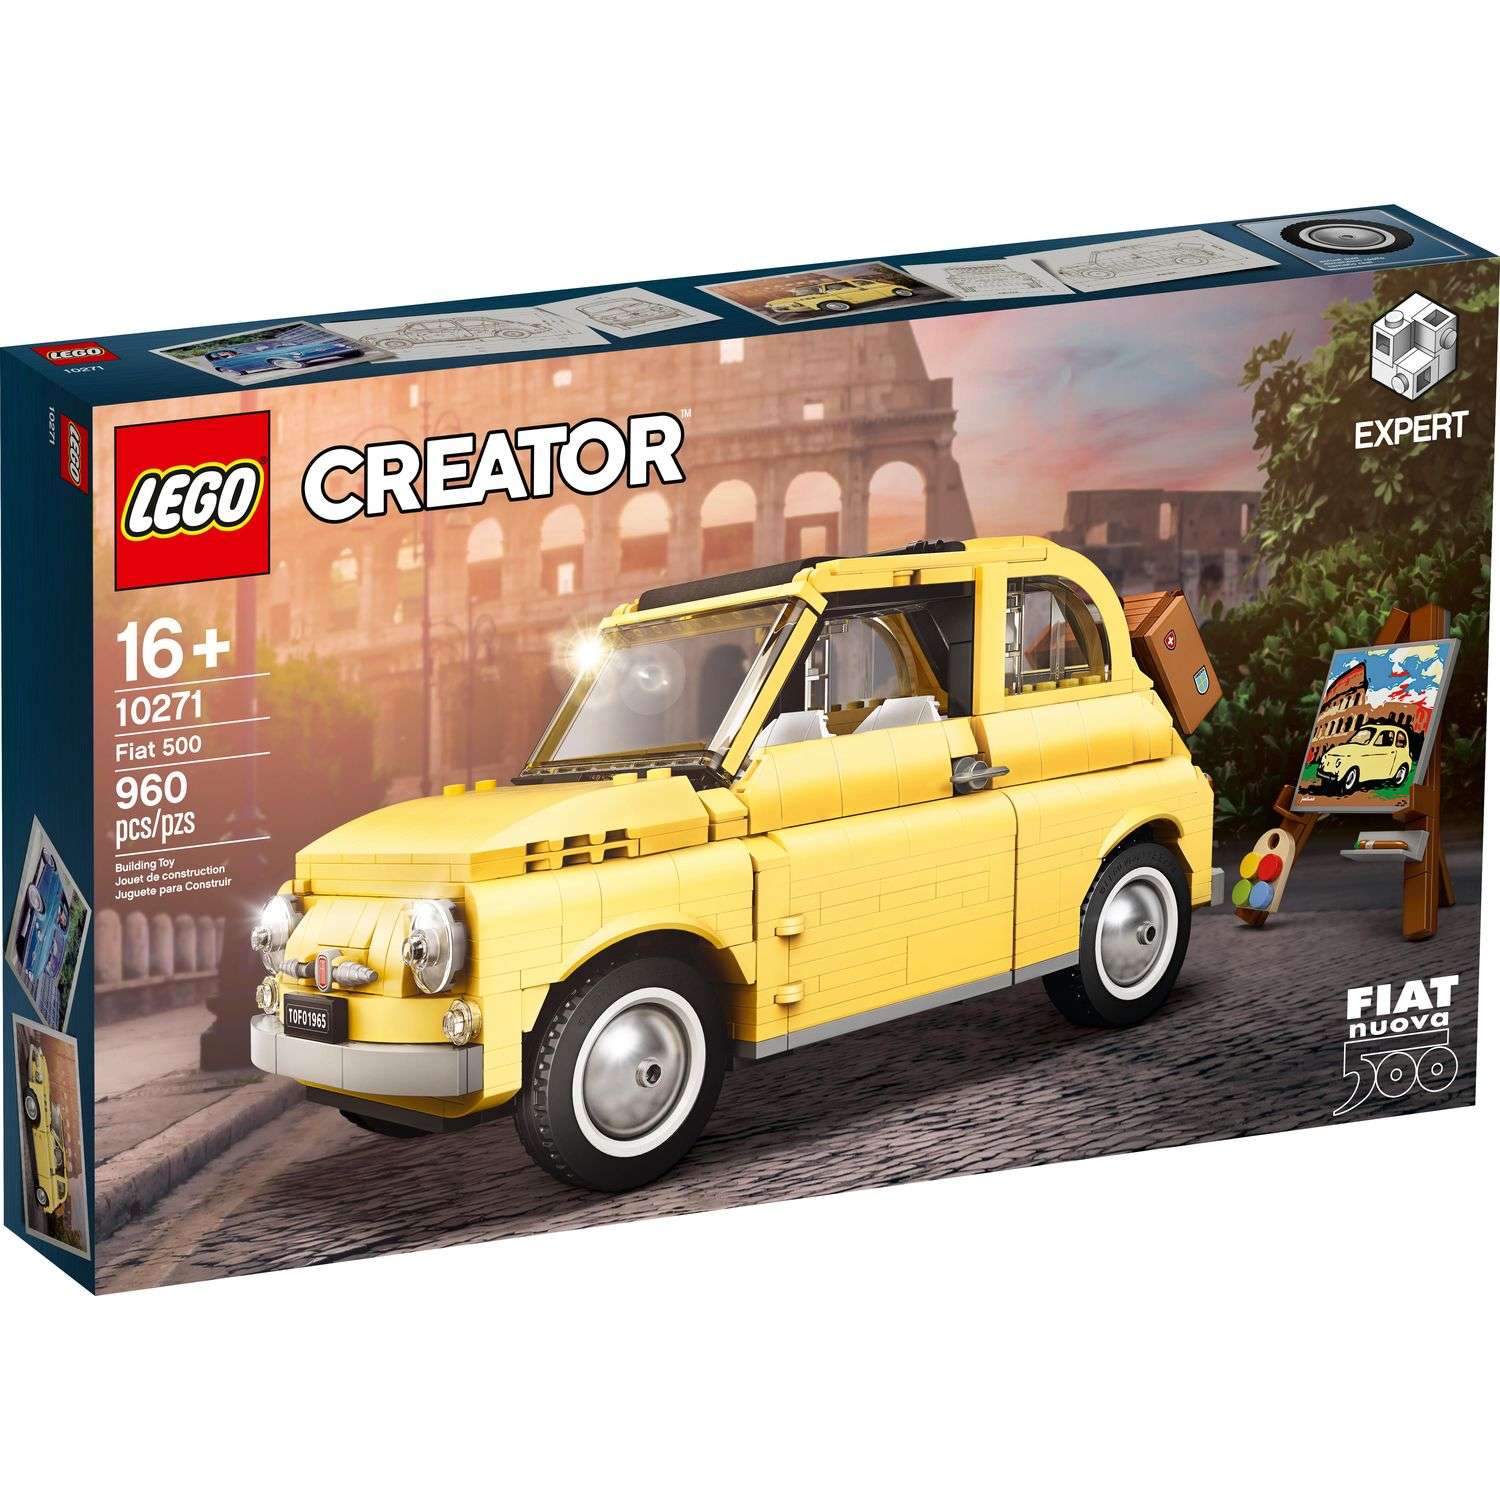 Конструктор LEGO Creator Фиат 500 10271 - фото 1